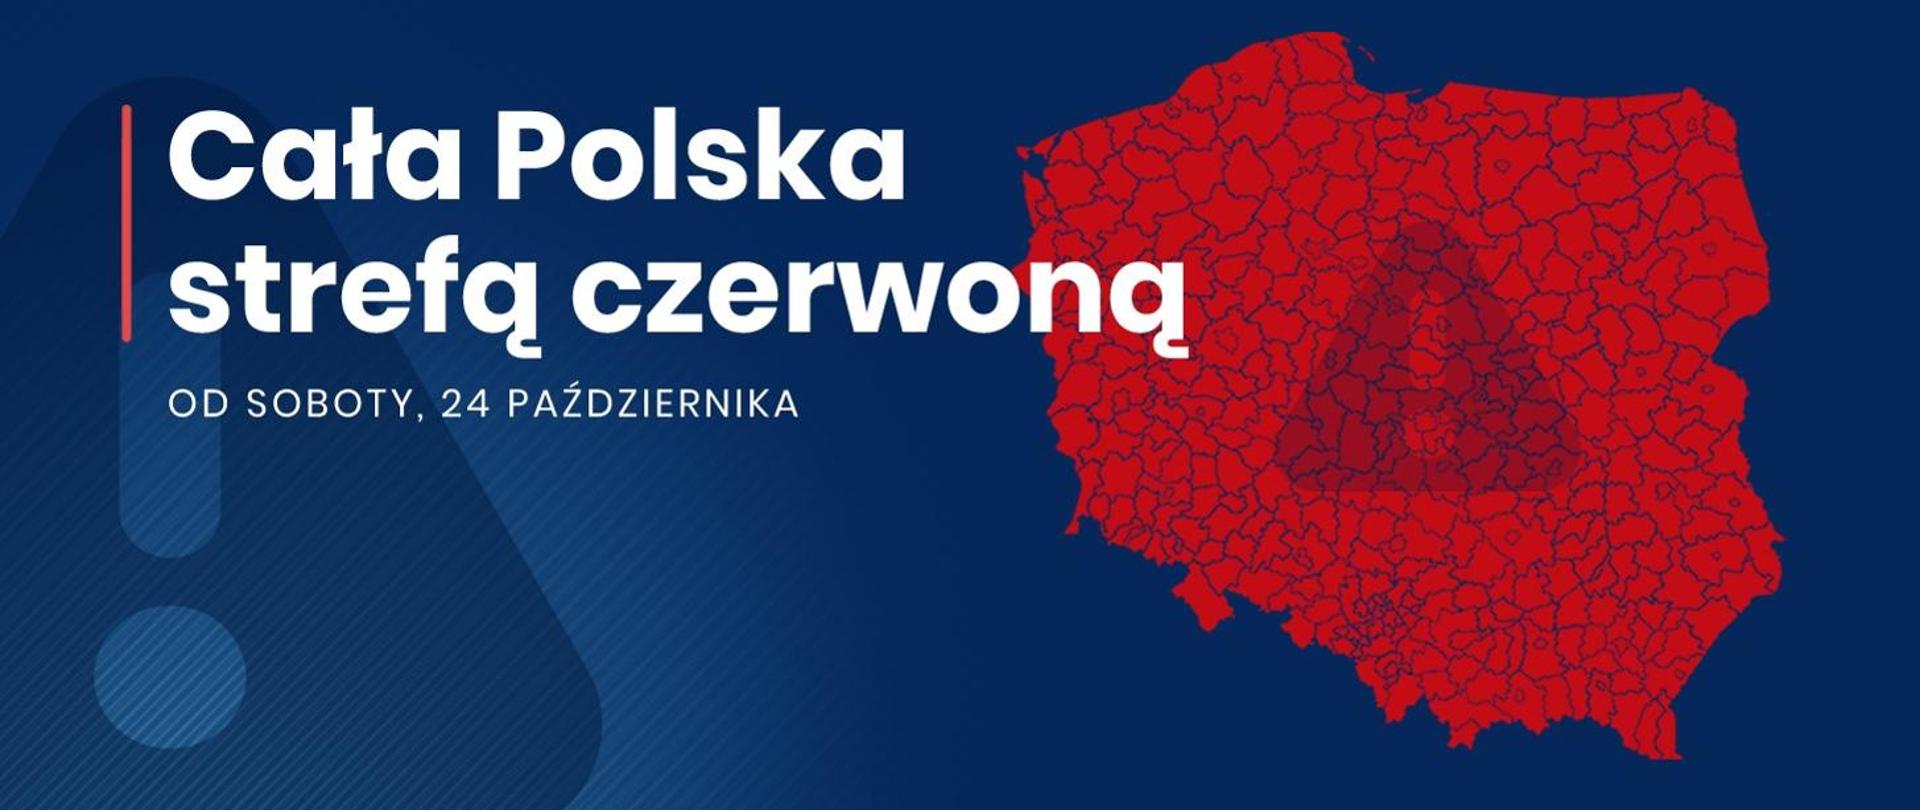 Mapa Polski zamalowana na czerwono na niebieskim tle. Obok biały napis: Cała Polska strefą czerwoną od soboty 24 października